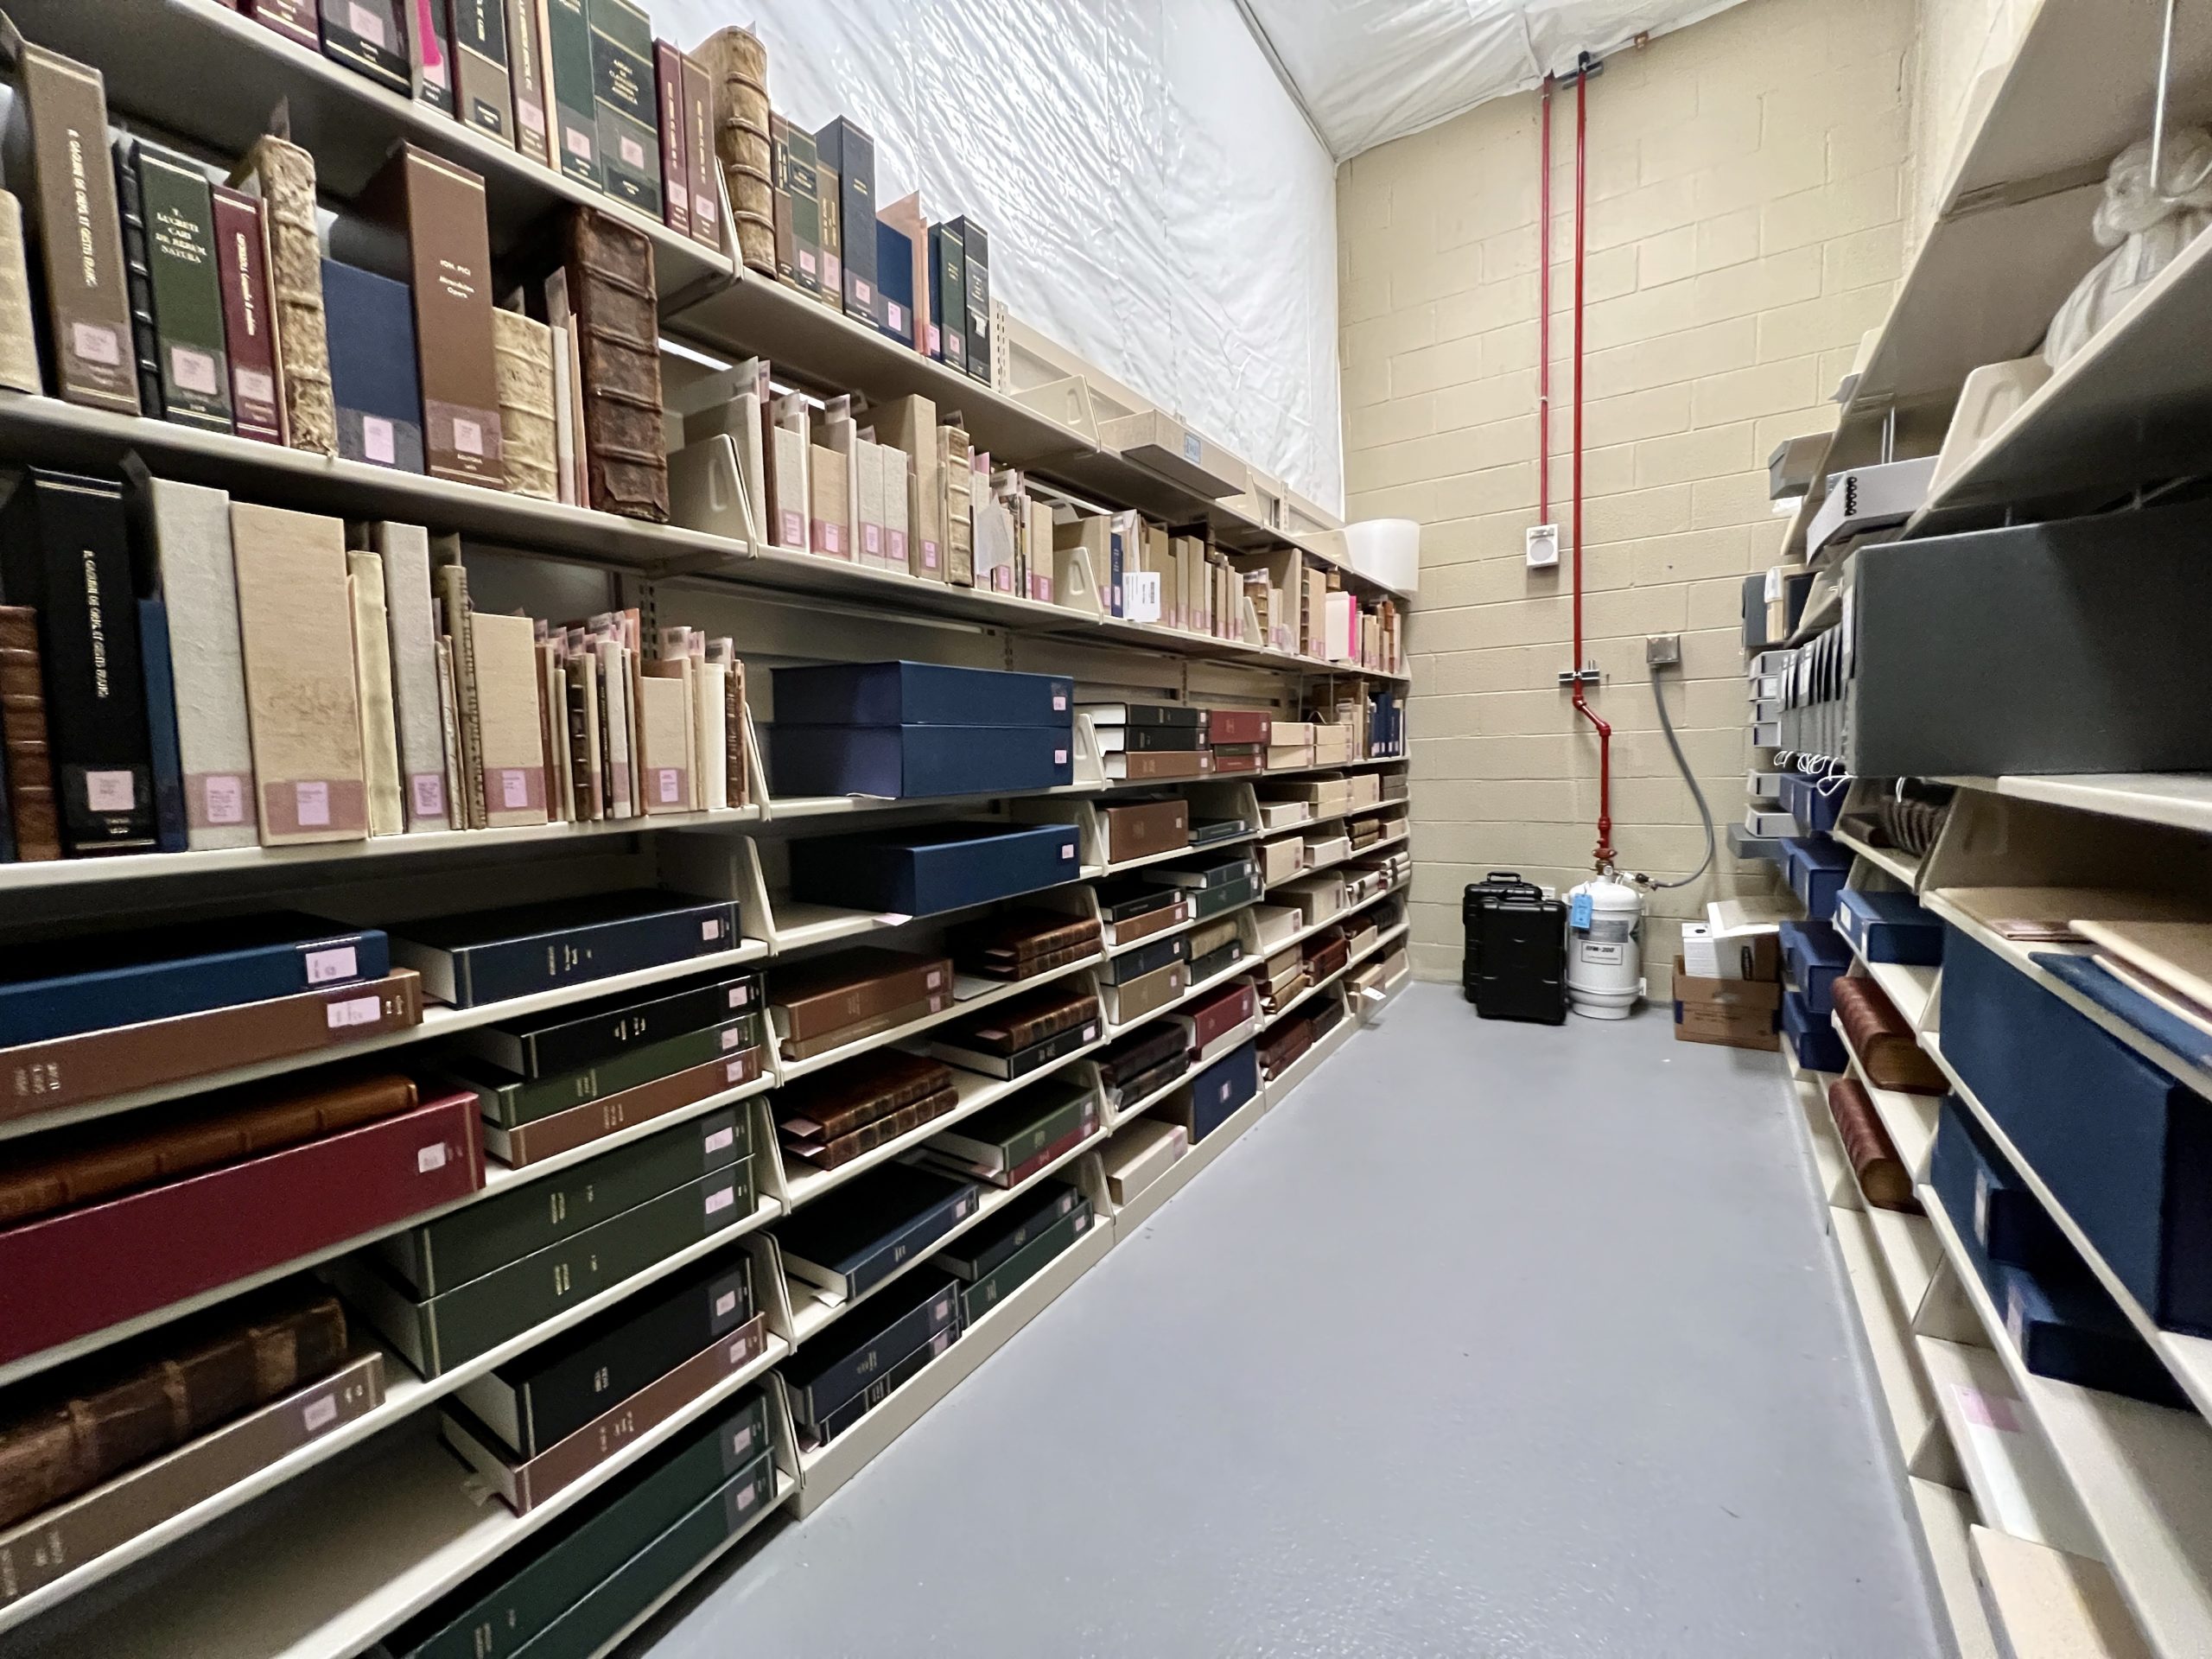 Book-filled shelves